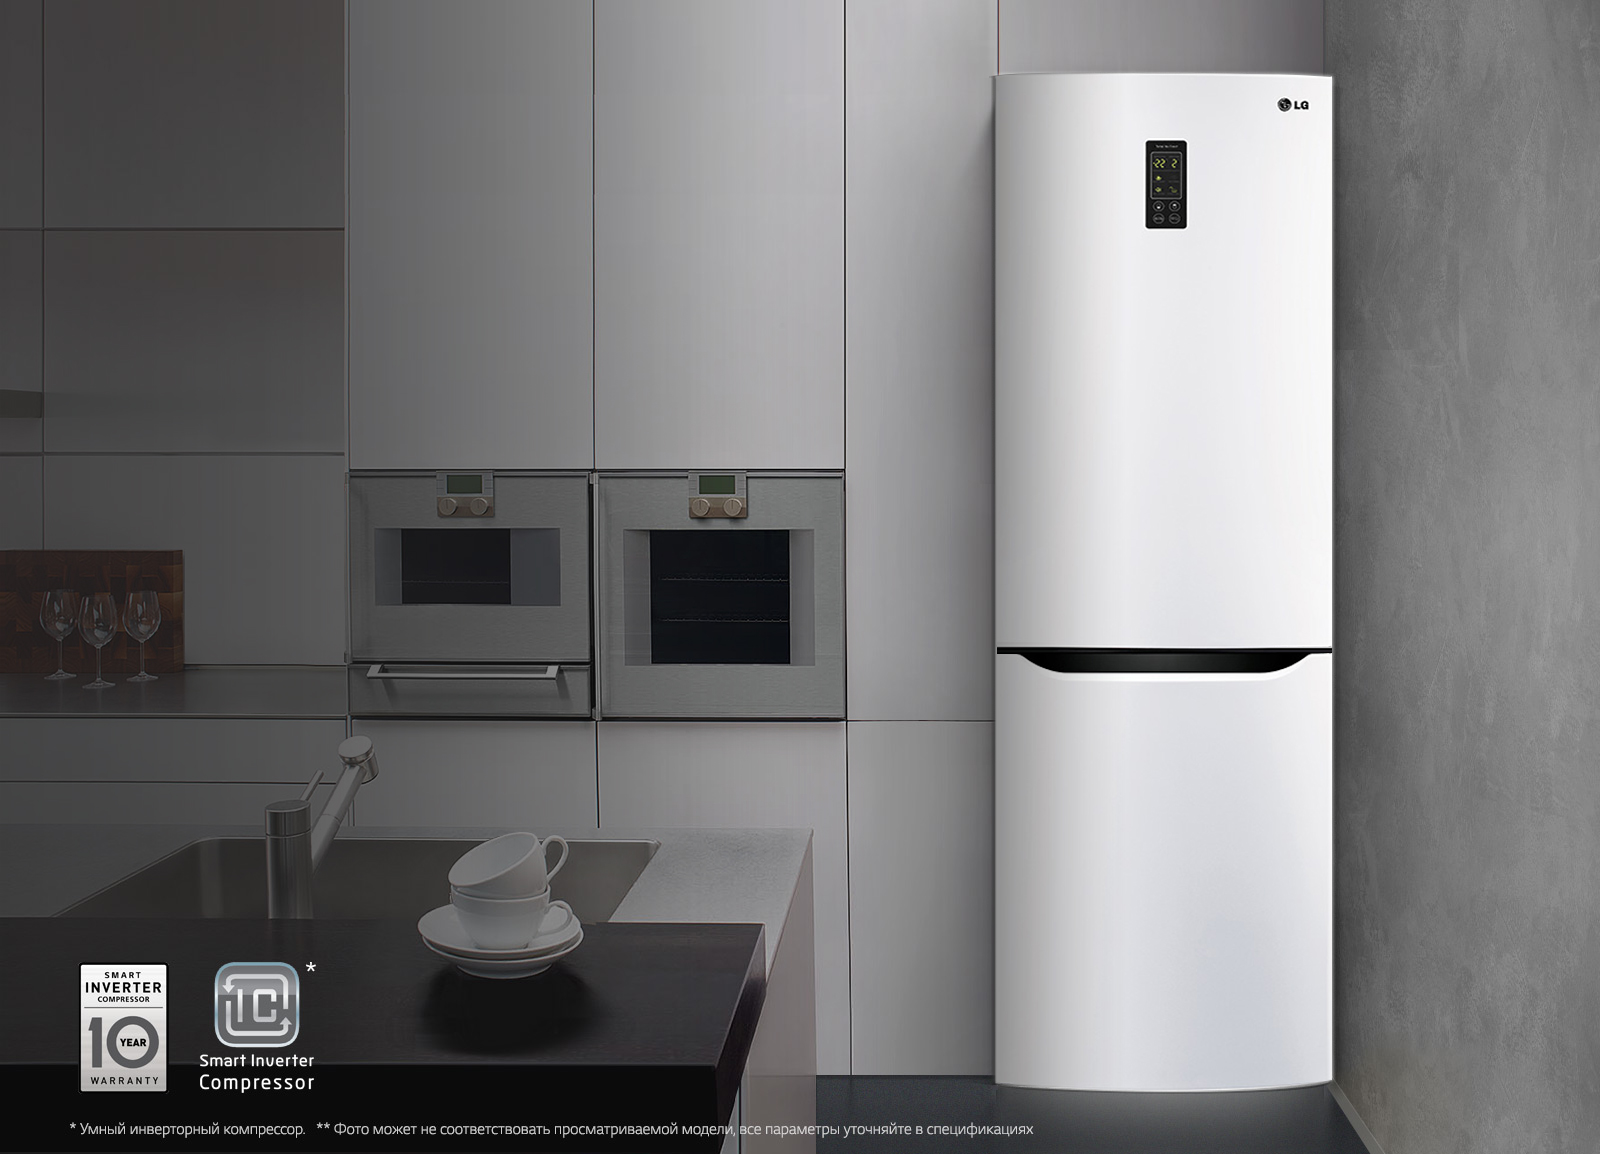 Какие могут быть неисправности холодильников LG